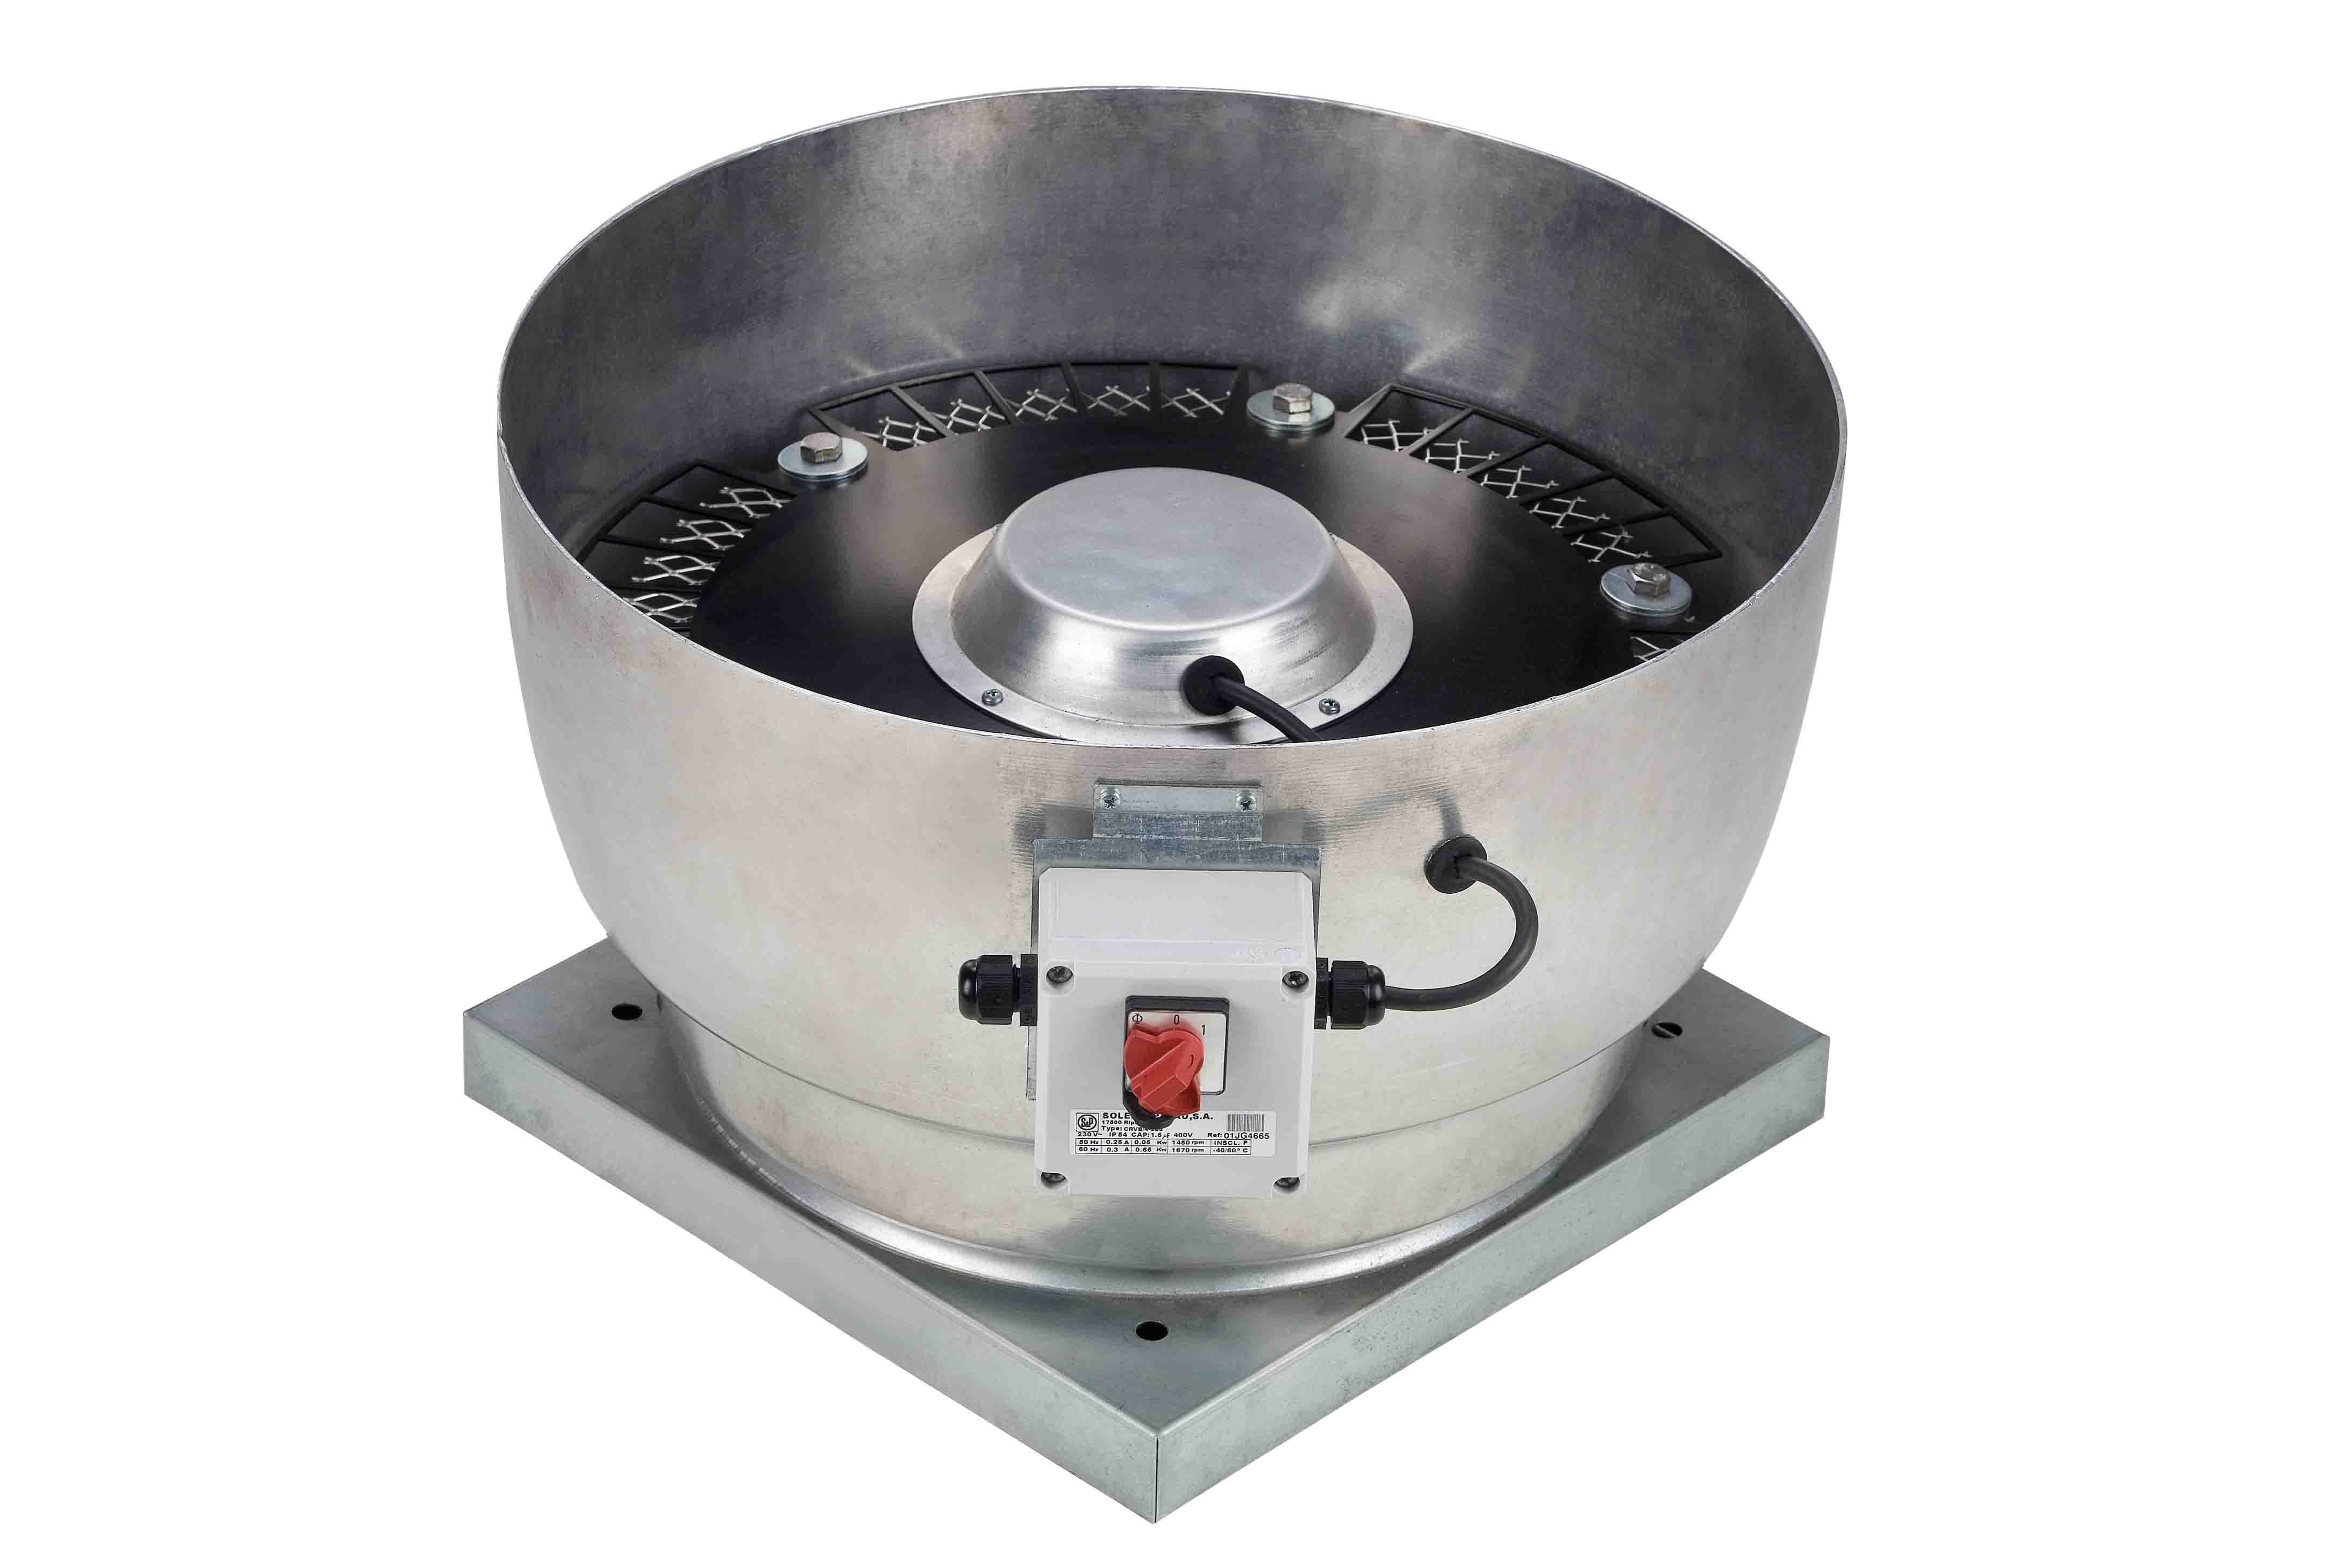 S&P - Tourelle centrifuge verticale monophasée, 230V, 2 pôles, diamètre 250 mm